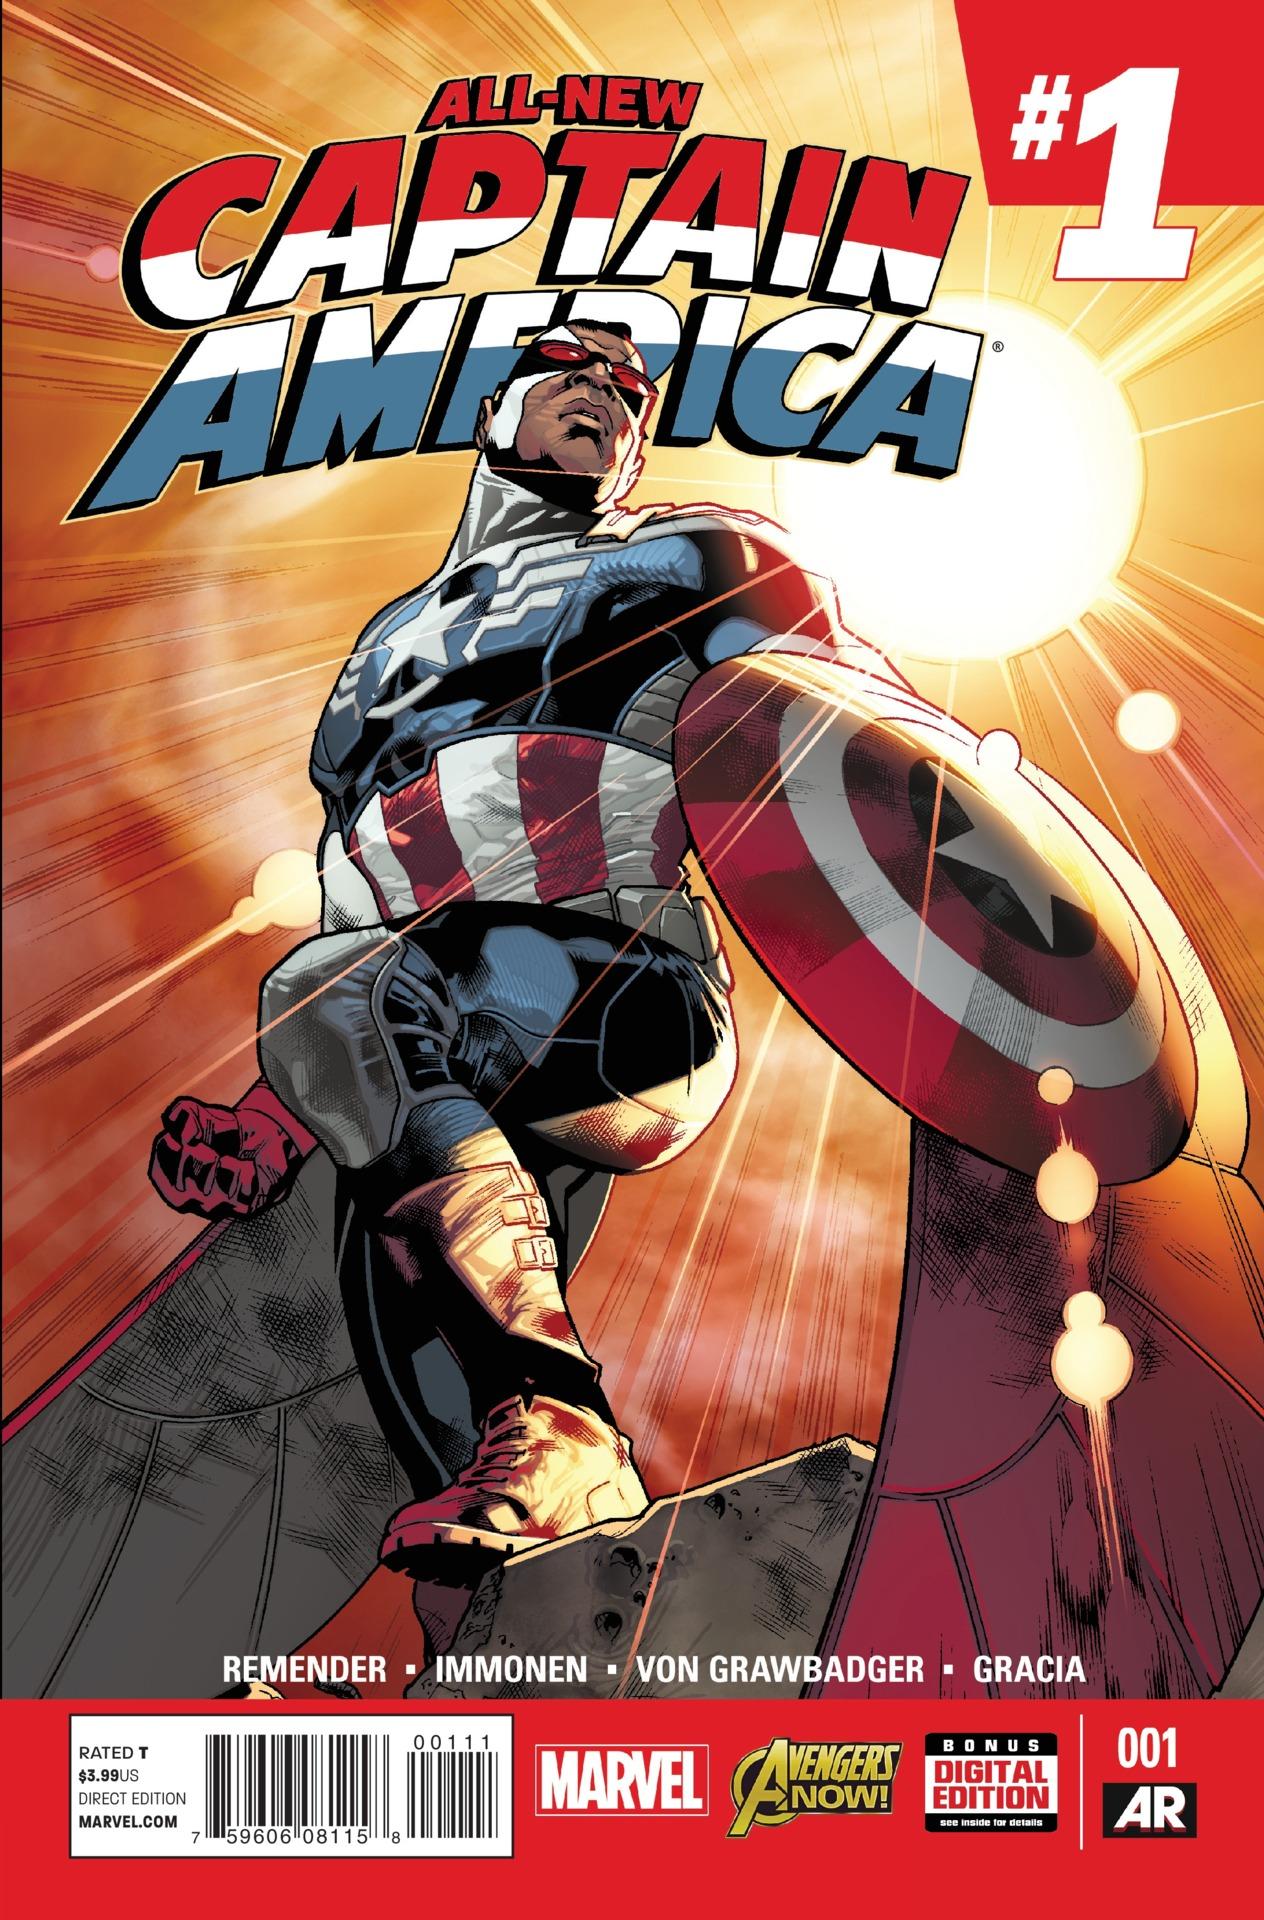 All-New Captain America Vol. 1 #1